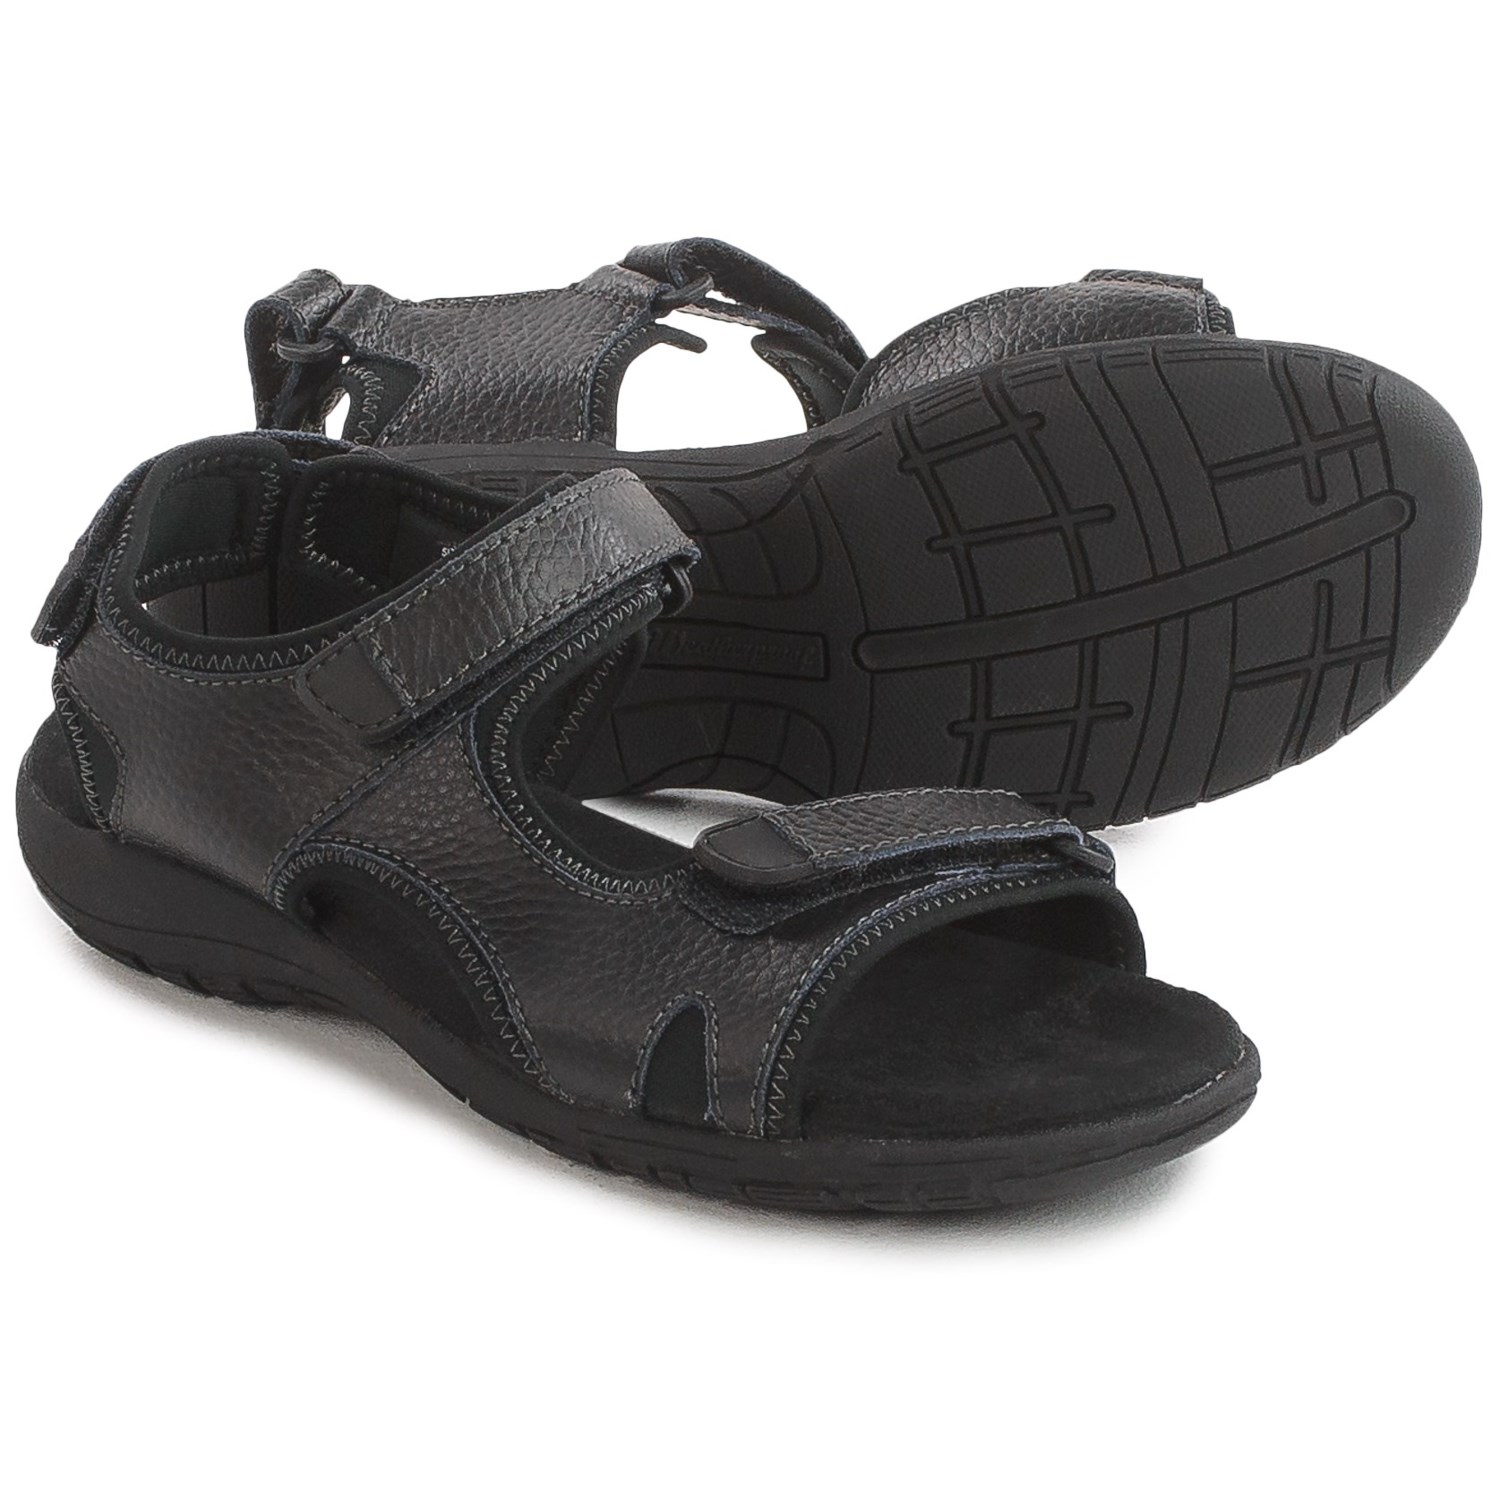 Weatherproof Vintage Vine Sport Sandals (For Women) - Save 50%